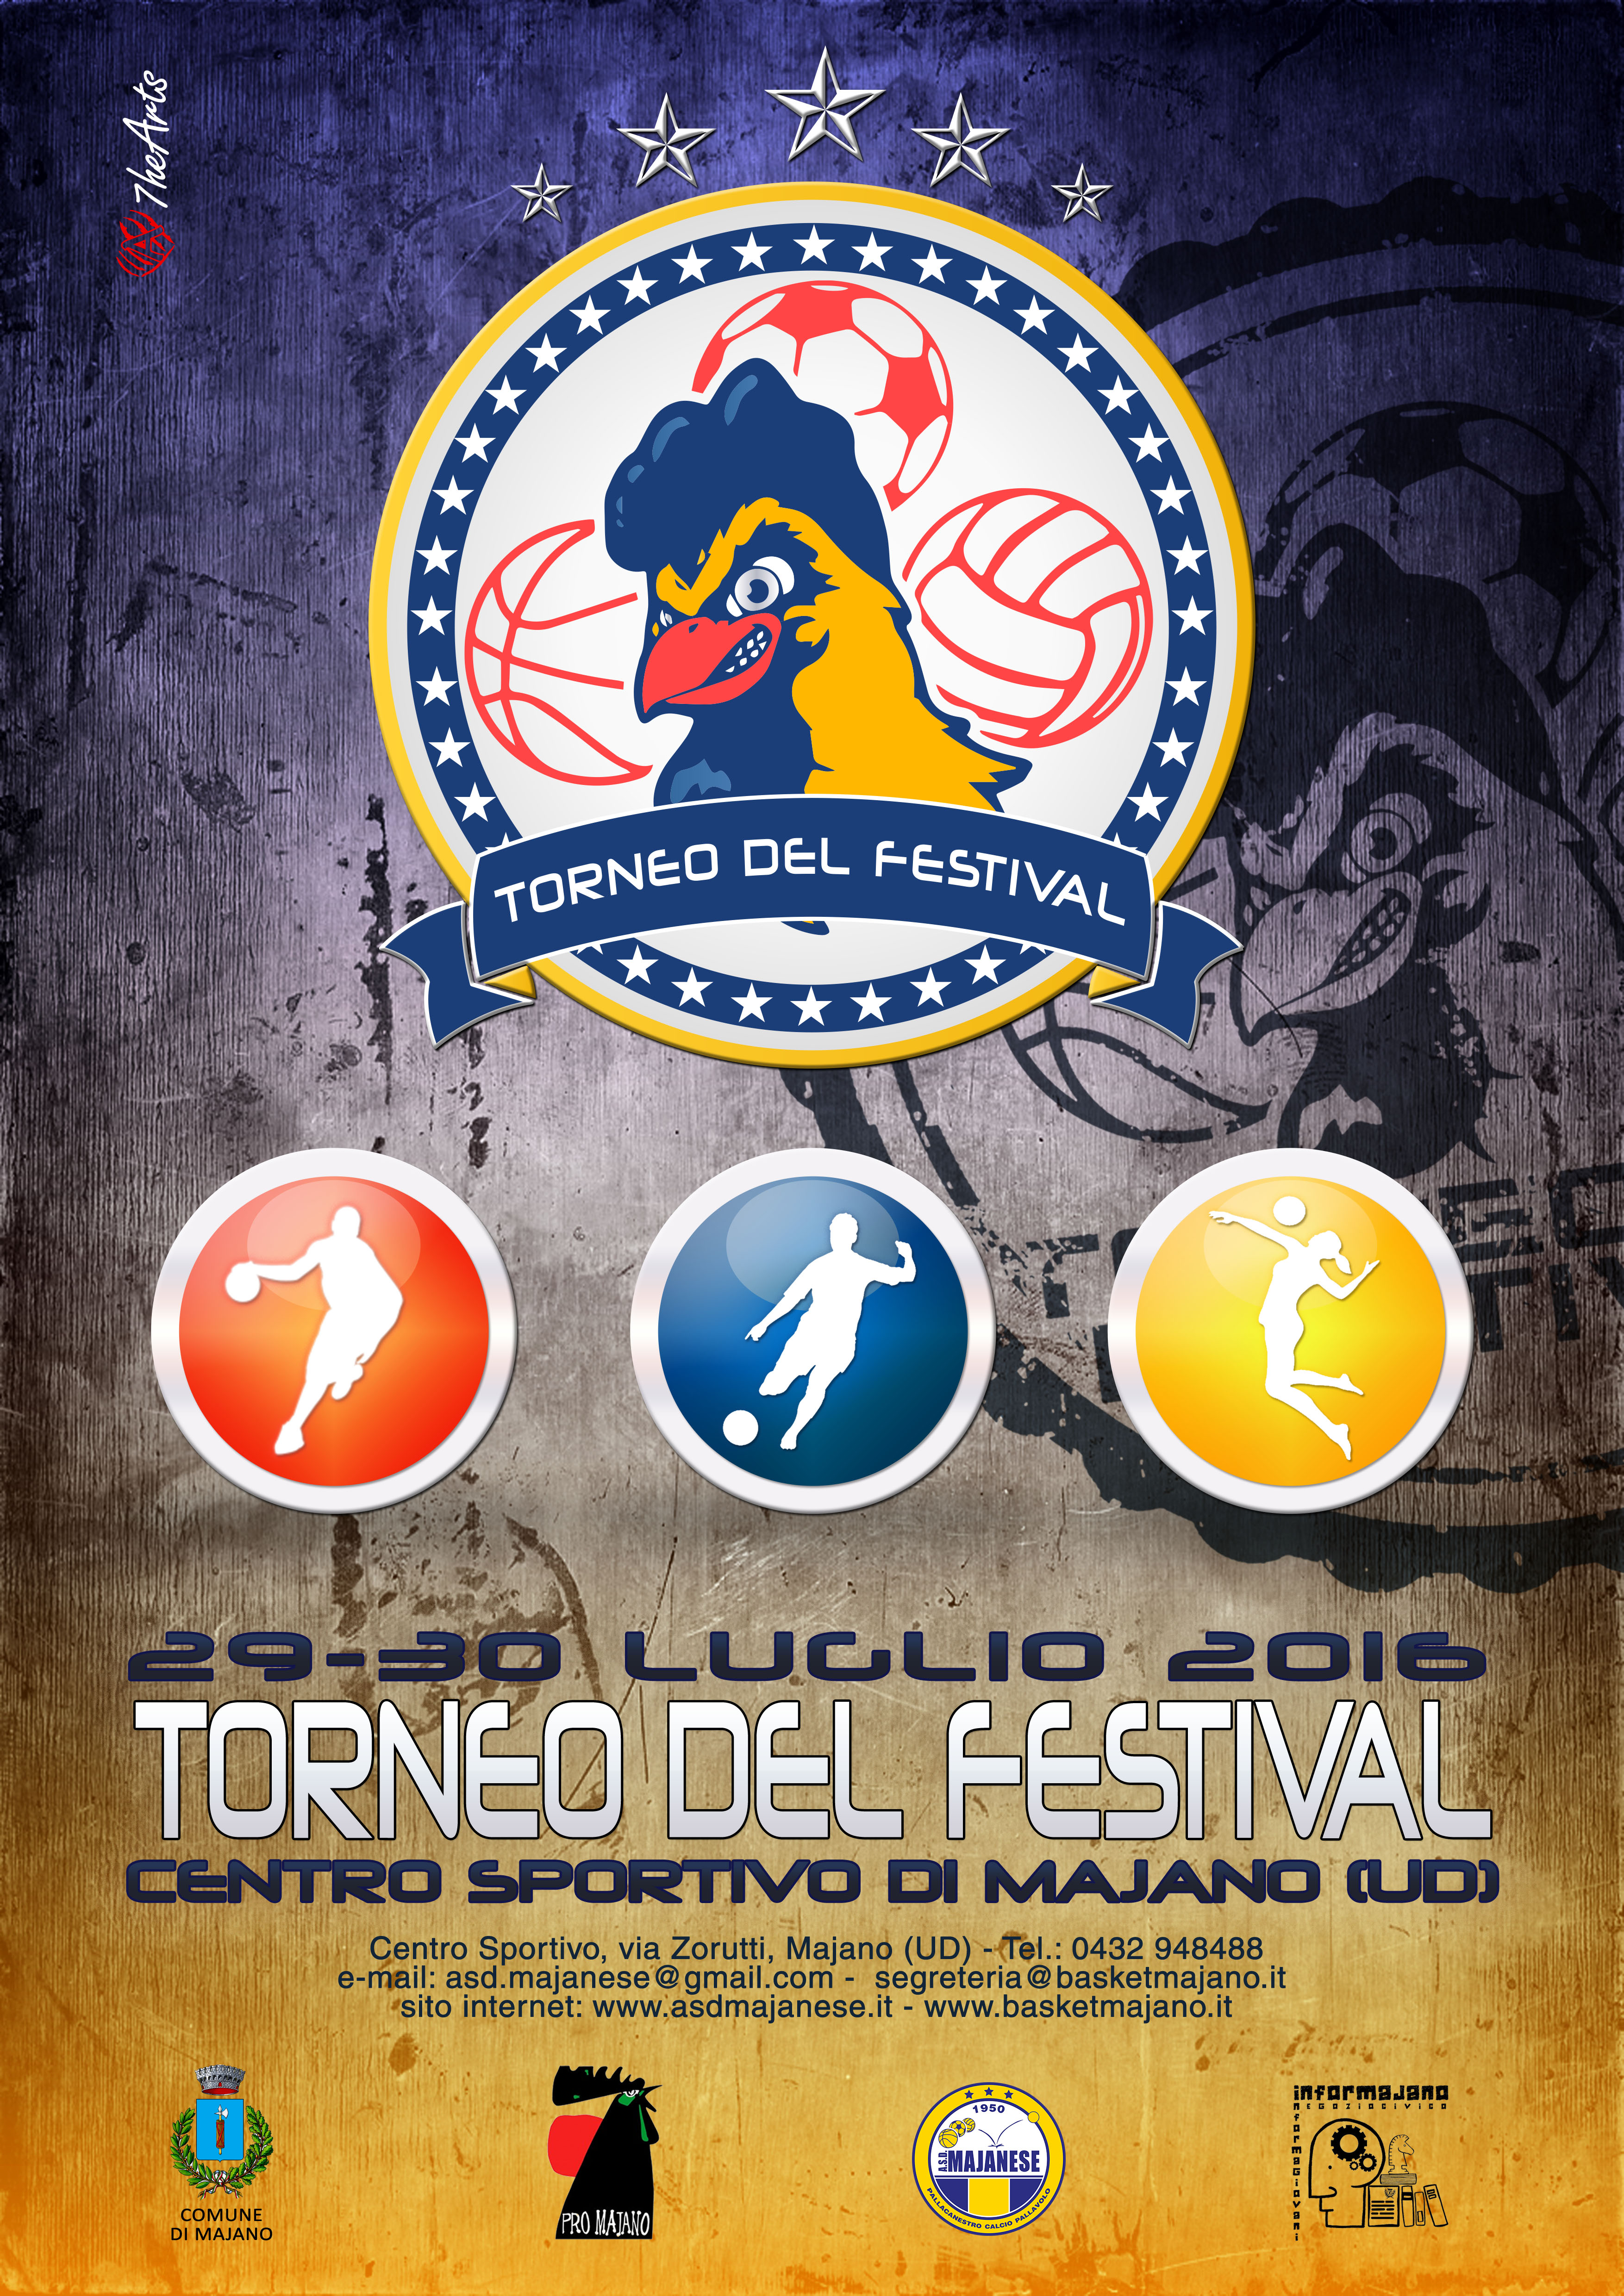 Torneo del Festival (29-30 luglio 2016)